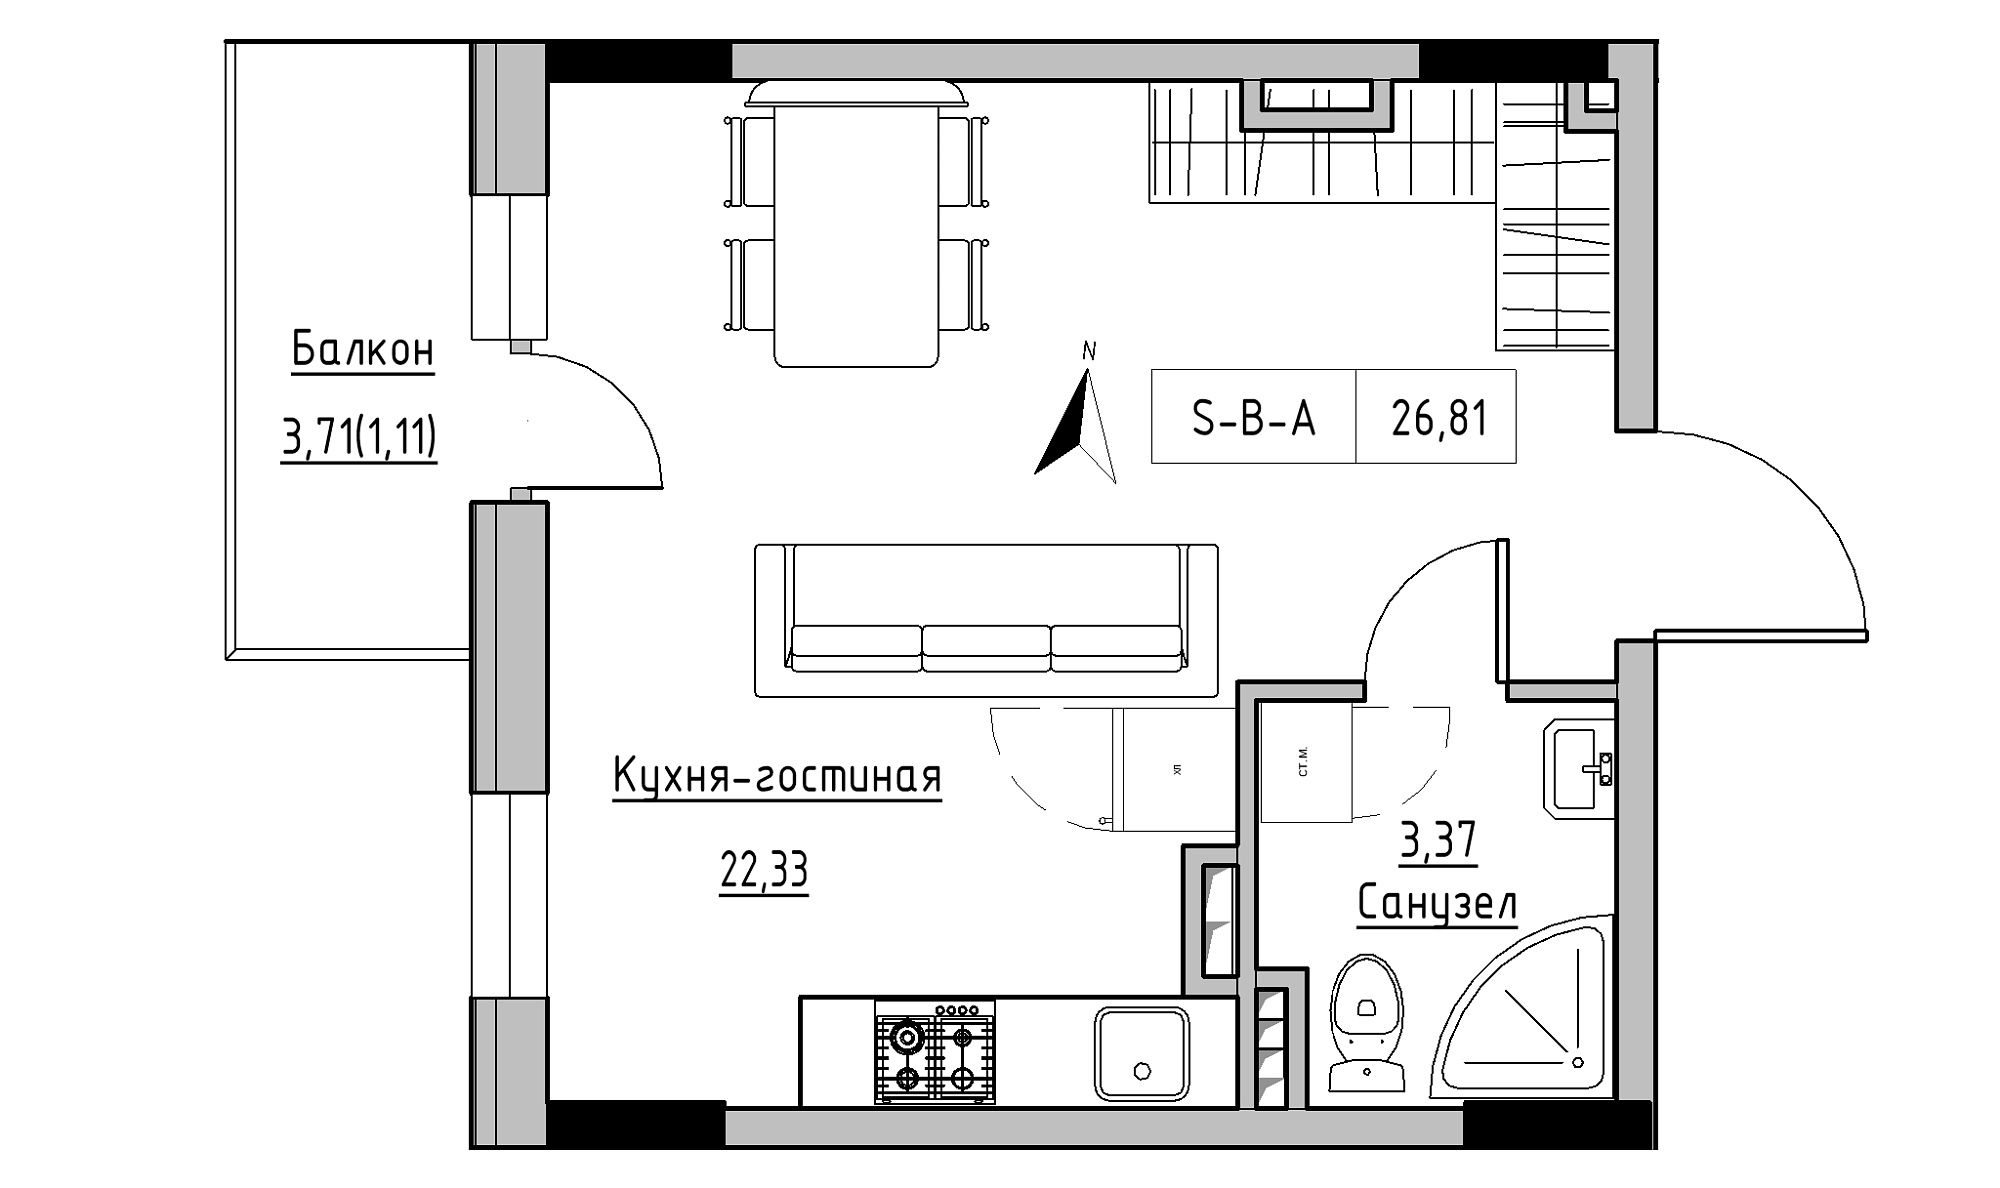 Планировка 1-к квартира площей 26.4м2, KS-025-03/0005.